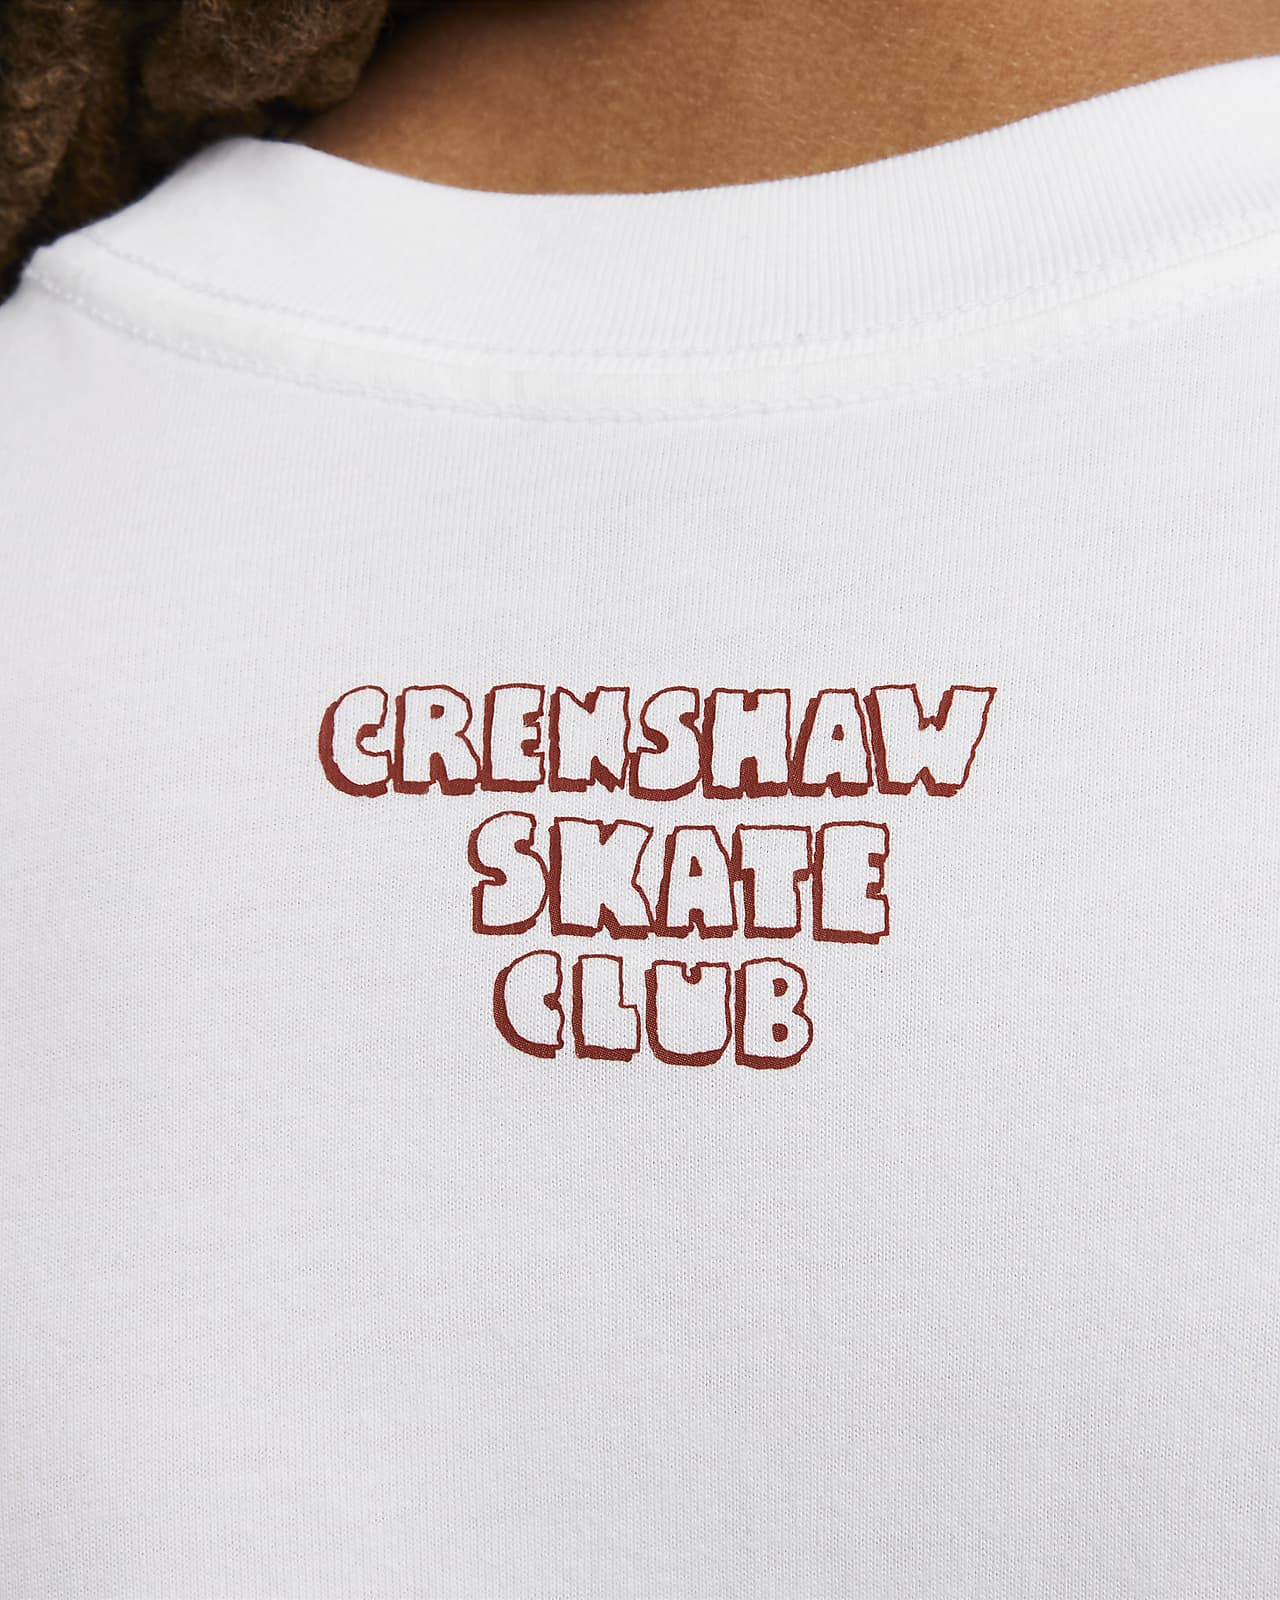 Original nike Cancels Crenshaw Skate Club Sb Shirt, hoodie